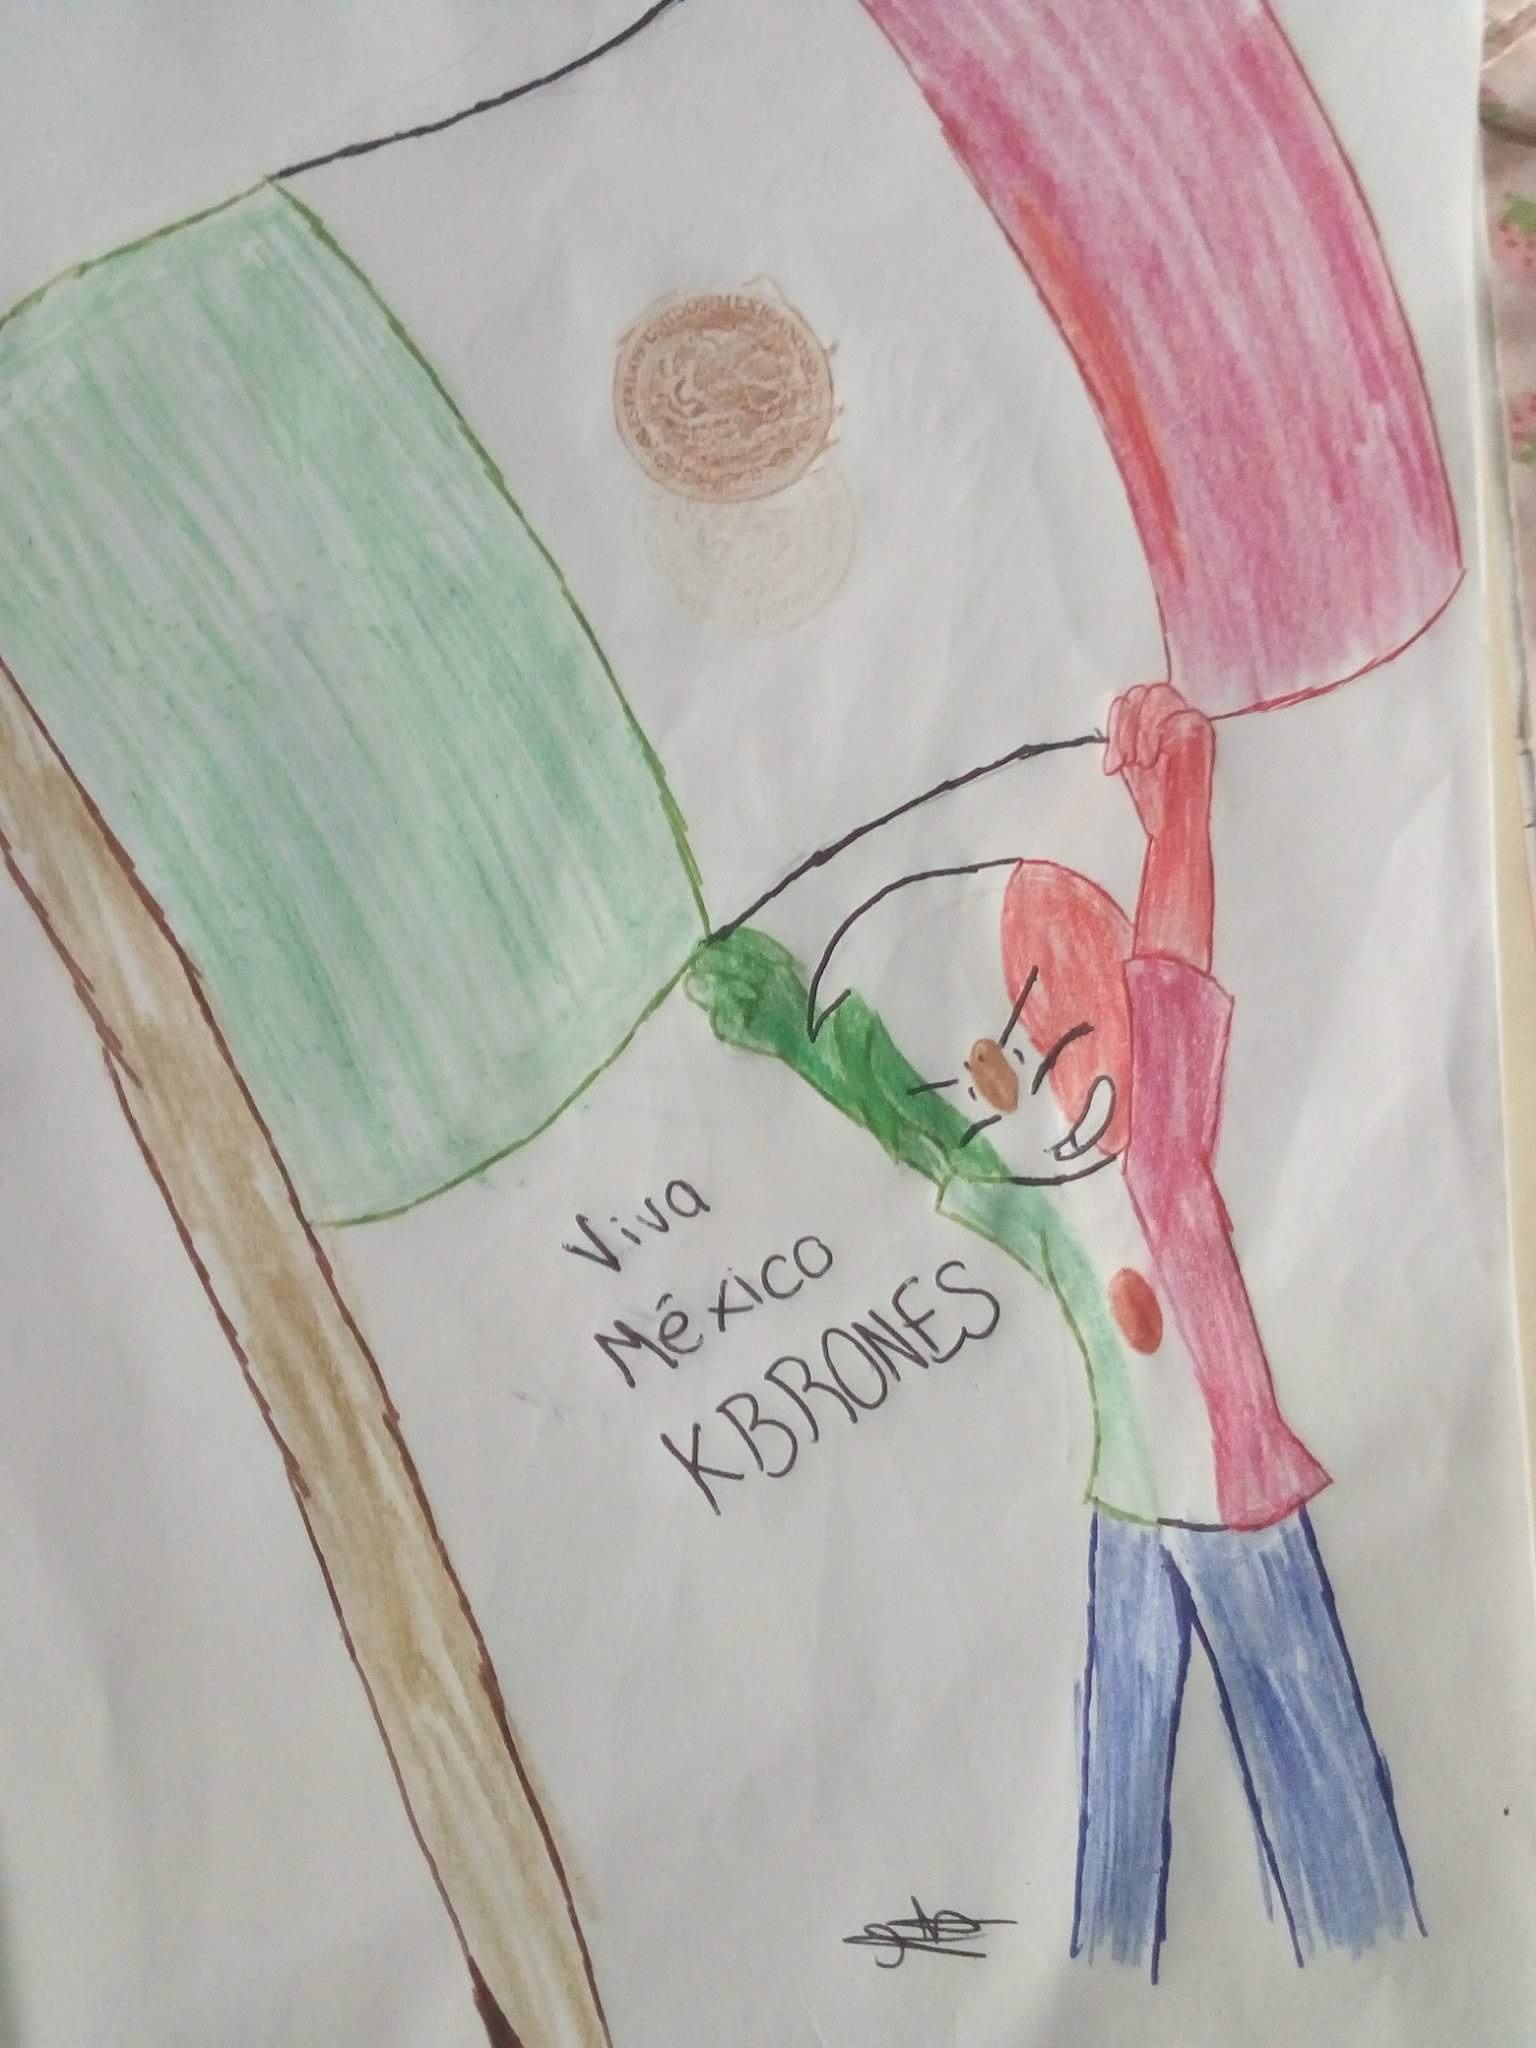 Dibujo de México (Especial 15 y 16 de septiembre) || hecho rapido ozivb |  °• CountryHumans •° Amino